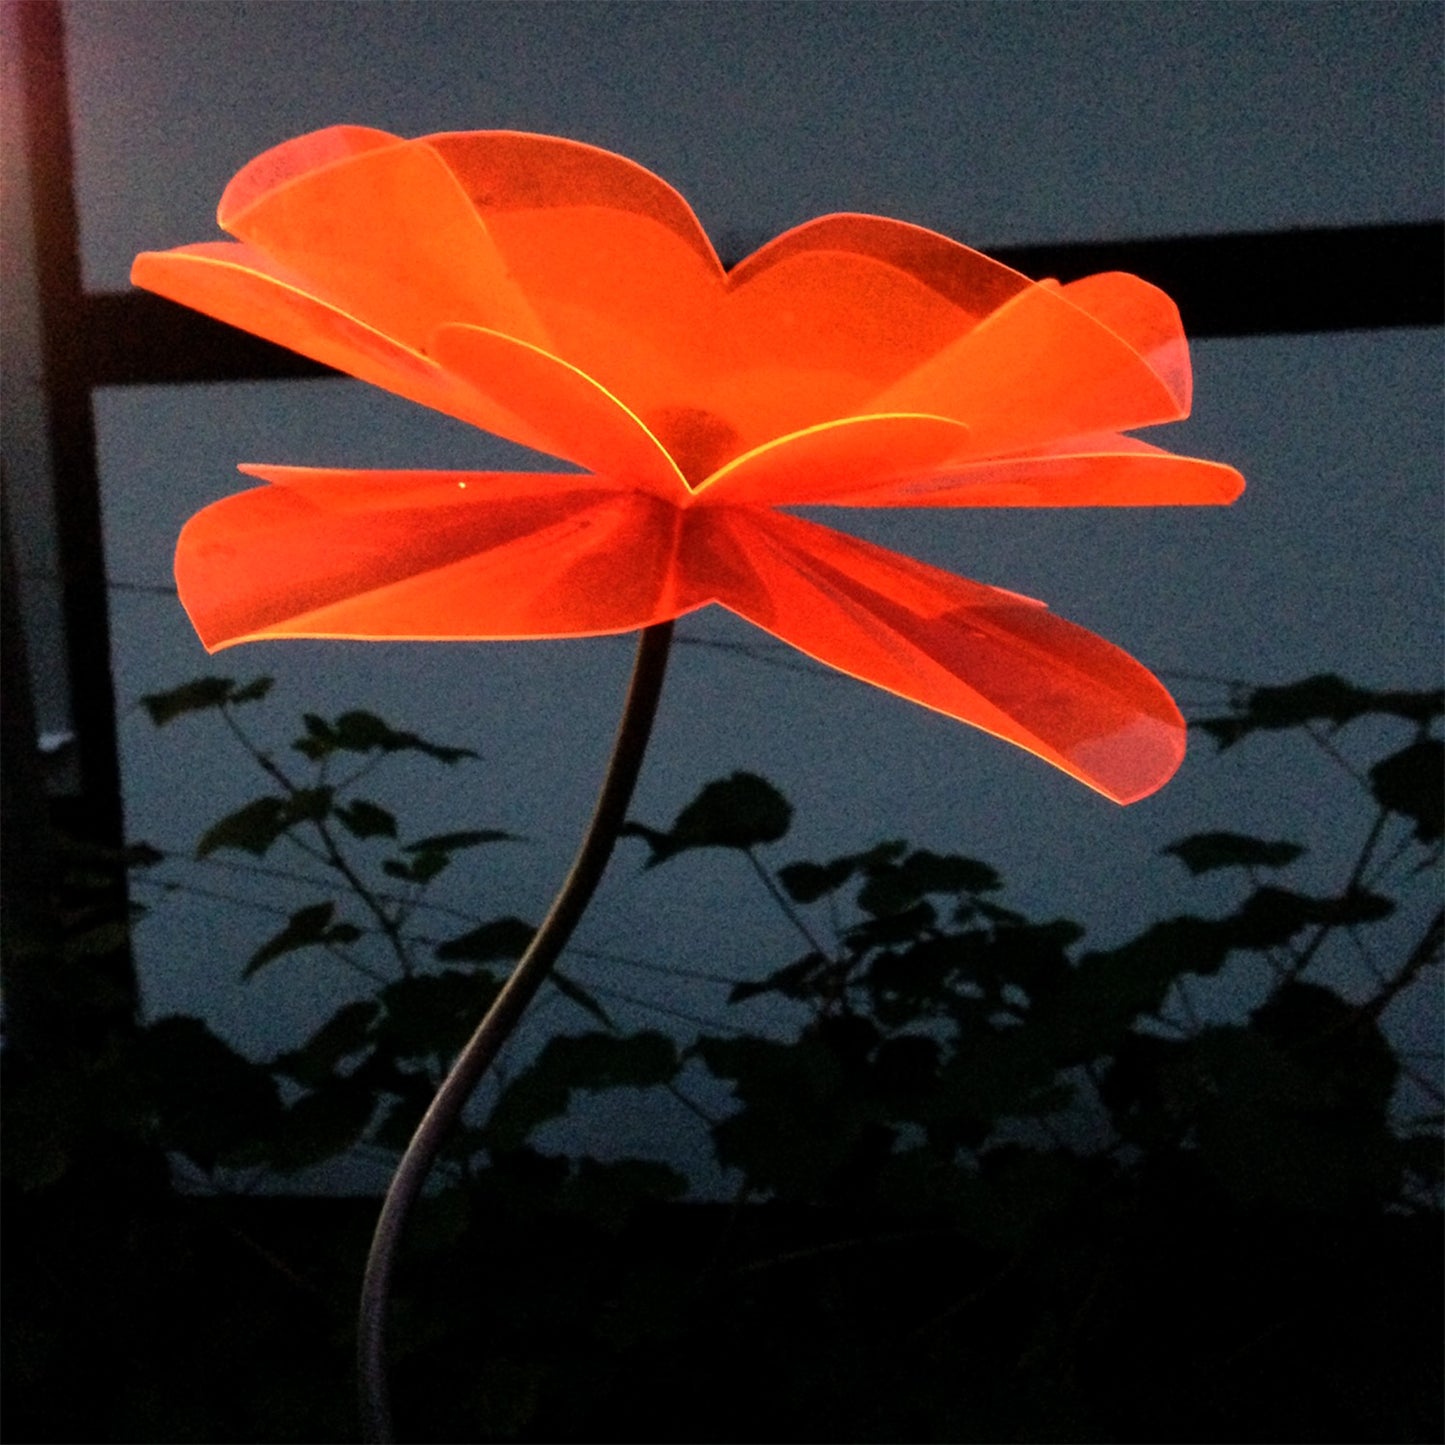 Poppy Flower Skewed 1,8m, flower ca 25 cm diam